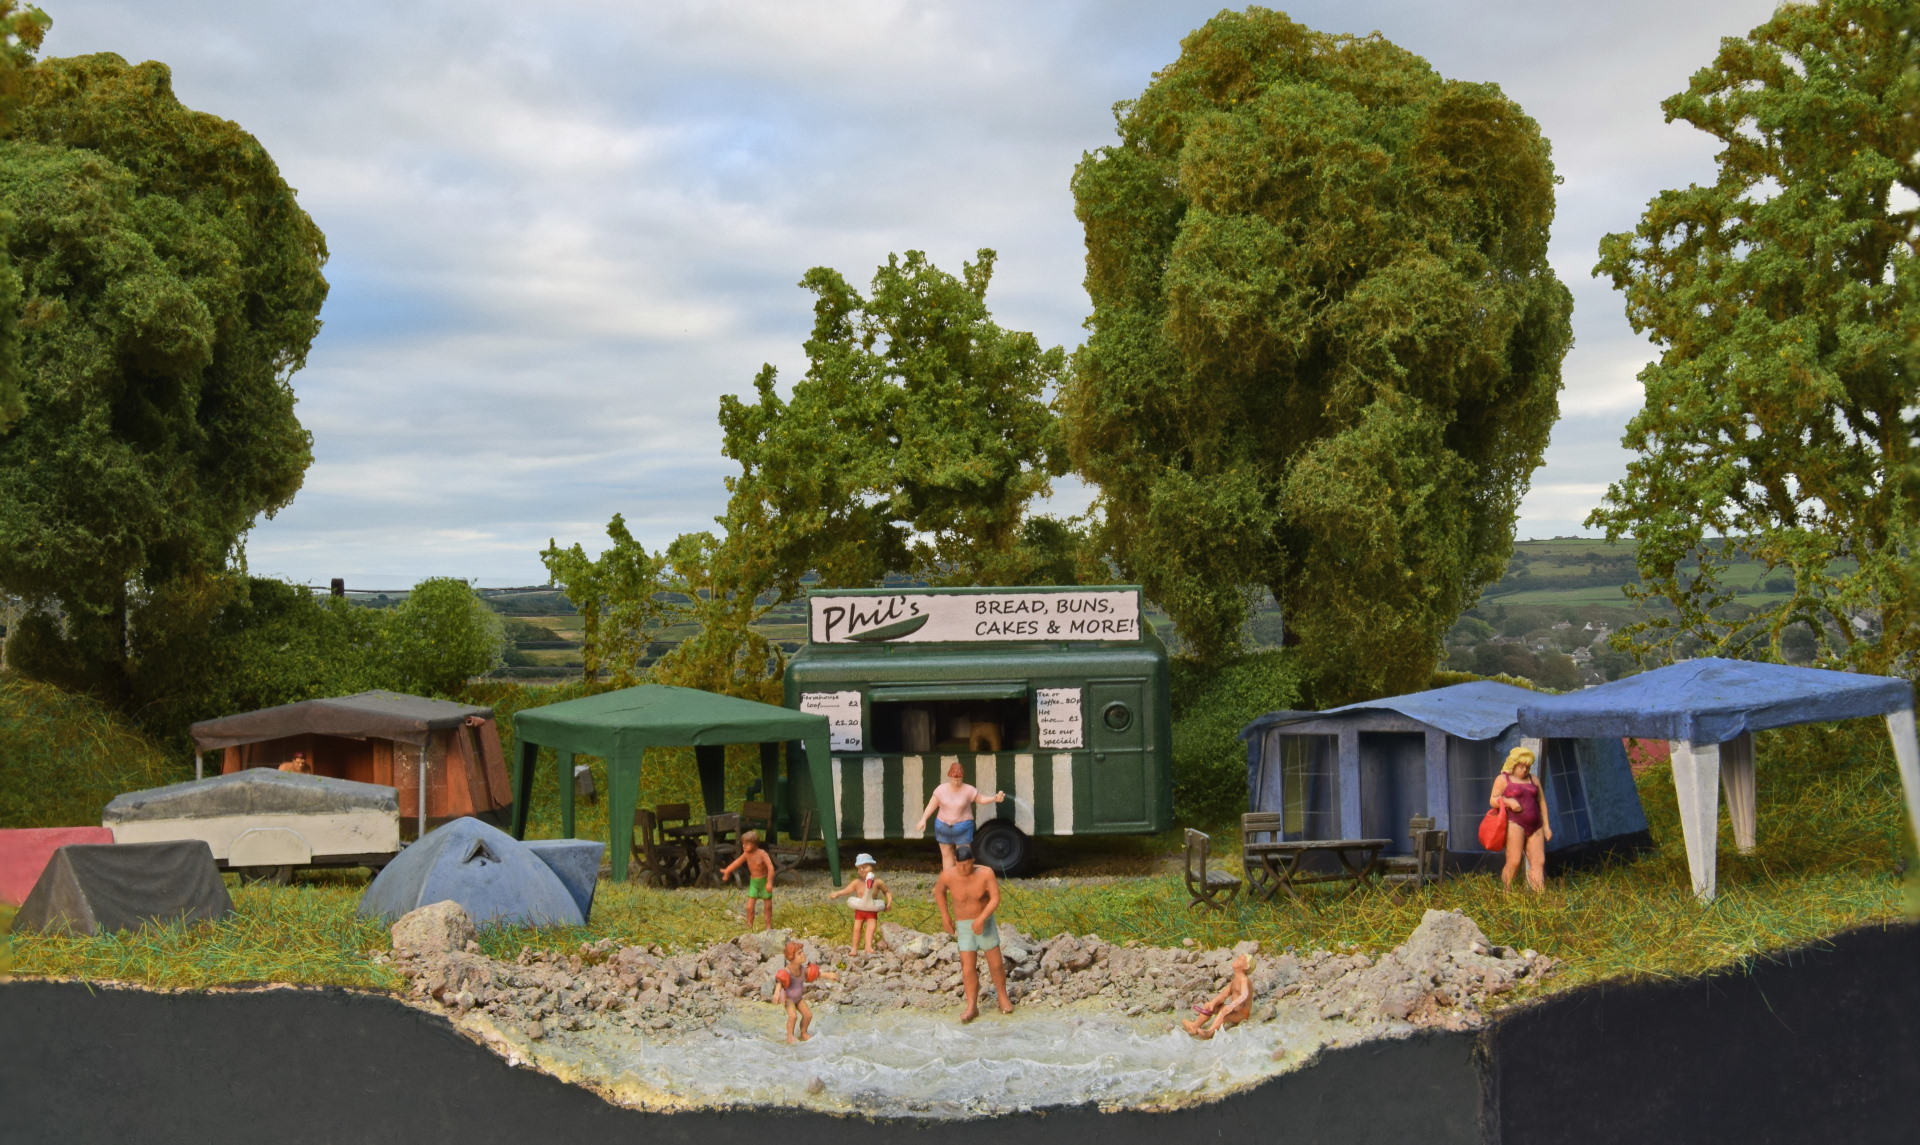 My campsite diorama